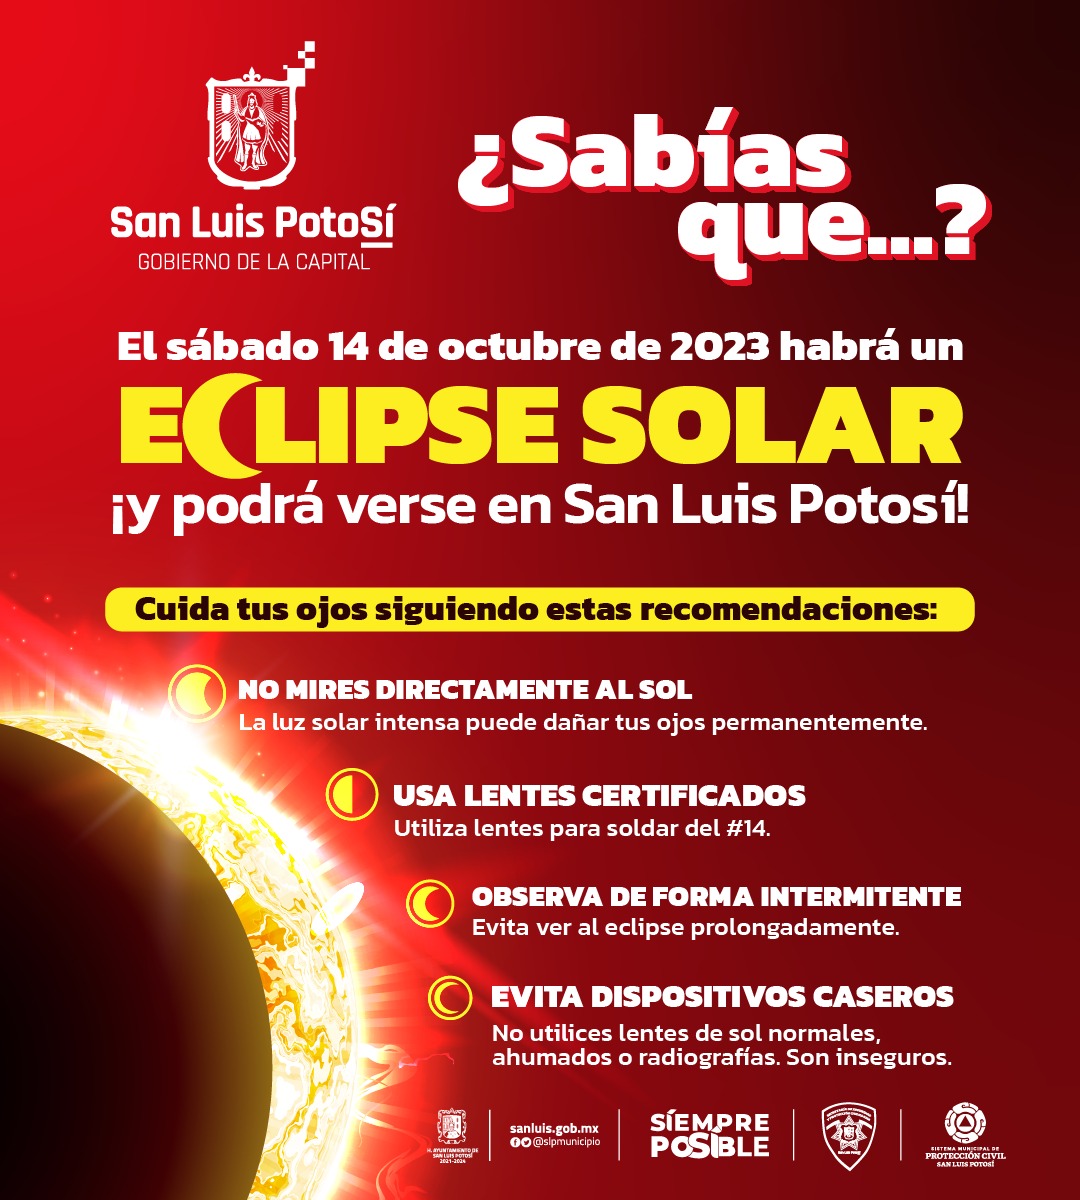 En San Luis Potosí se podrá apreciar en un 72 por ciento, a partir de las 11 de la mañana, por eso la relevancia de extremar precauciones.